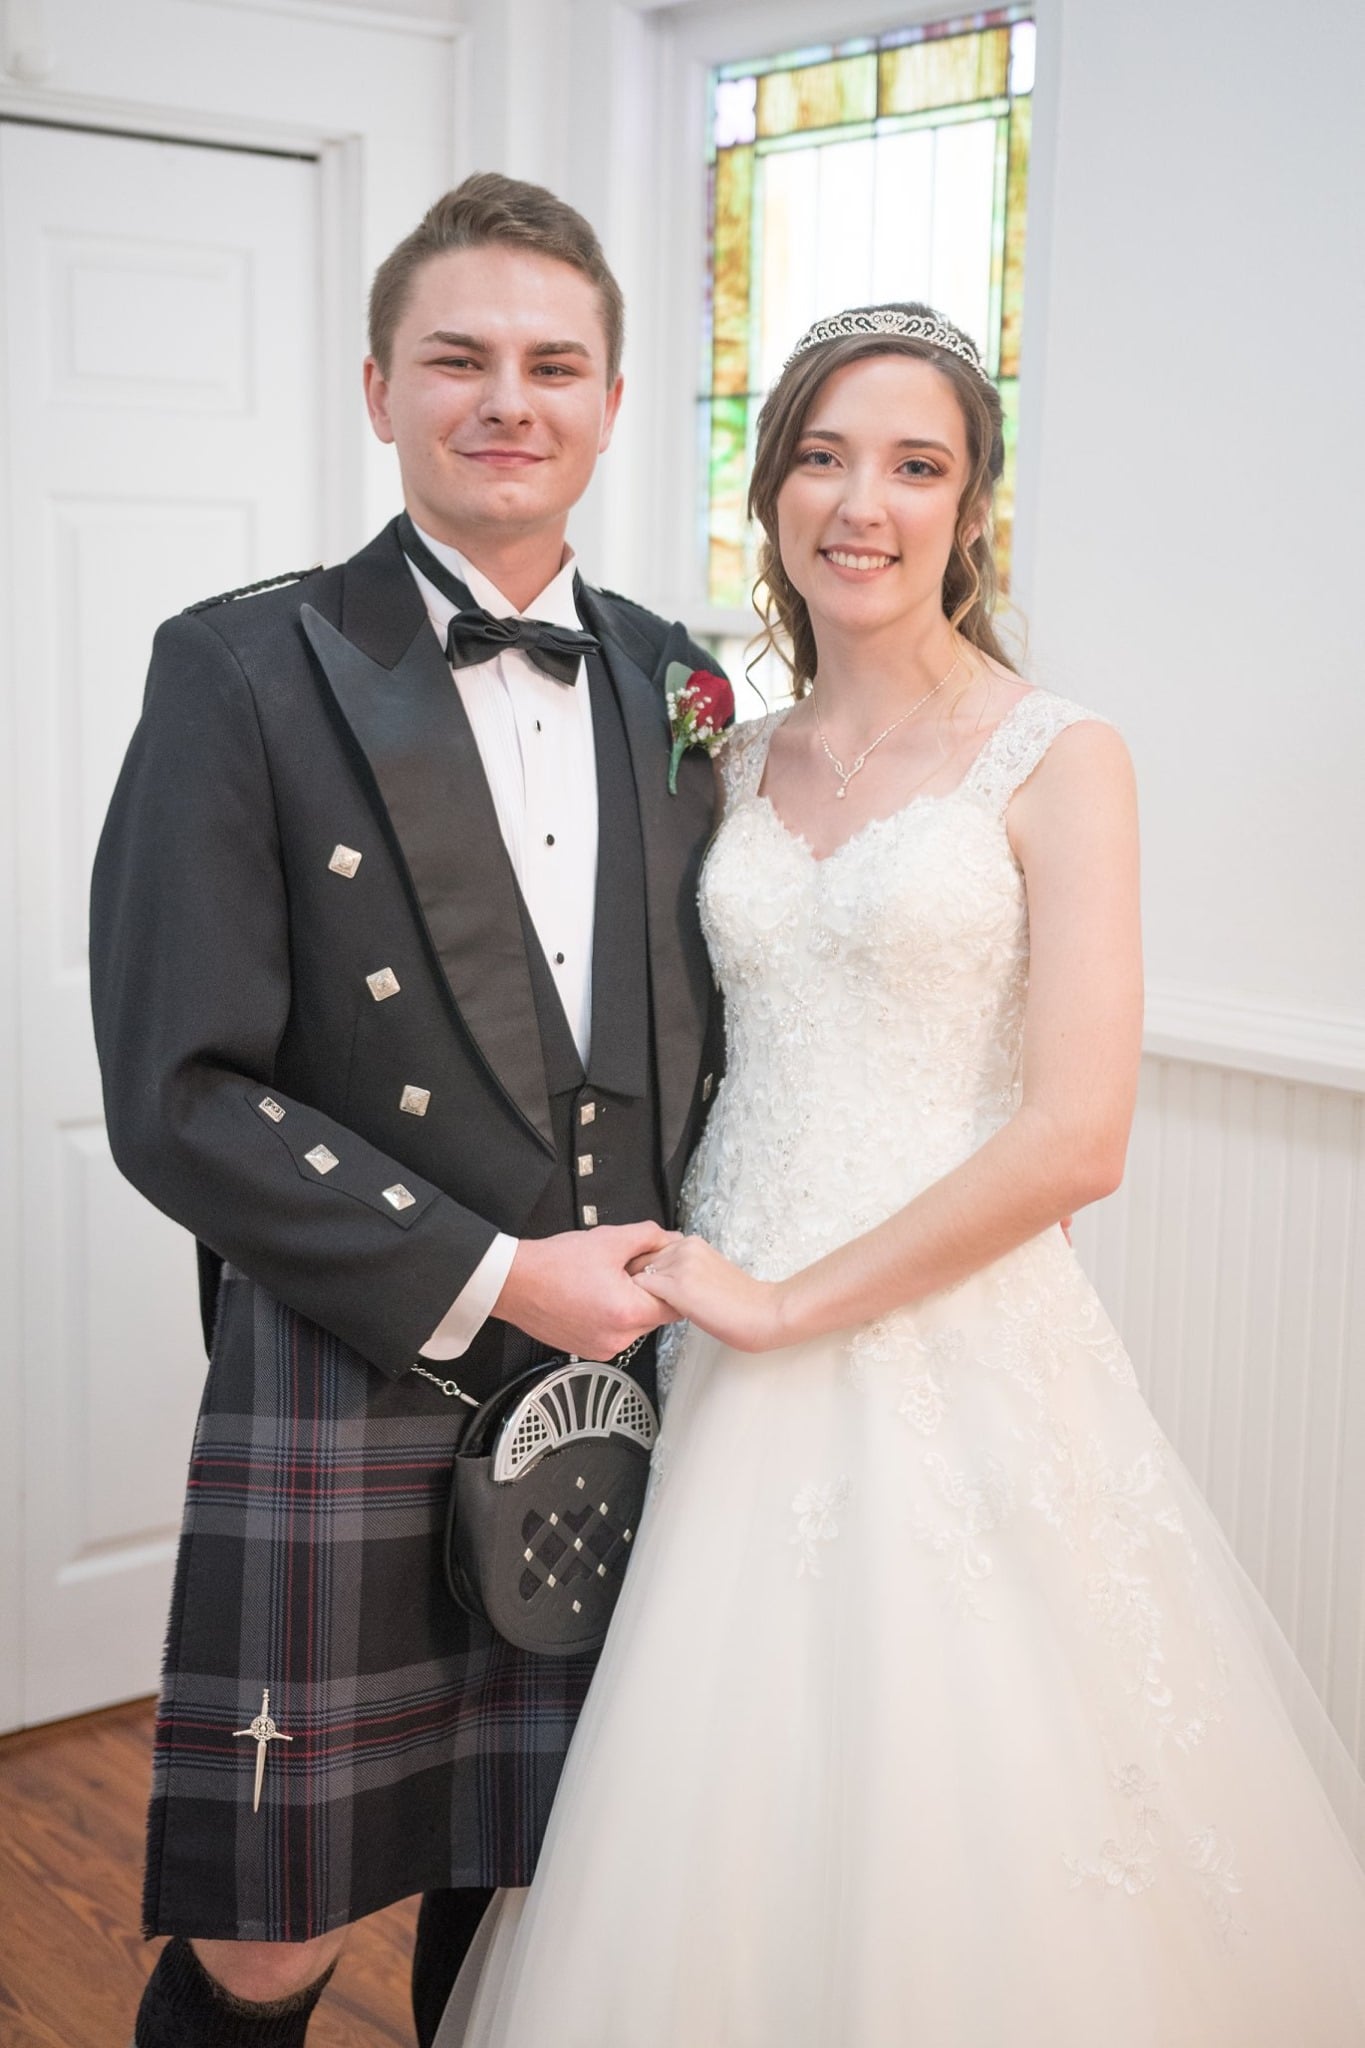 Leia Wojciechowski and her husband pose for a wedding portrait. He wears a Scottish kilt and she wears a white wedding dress.